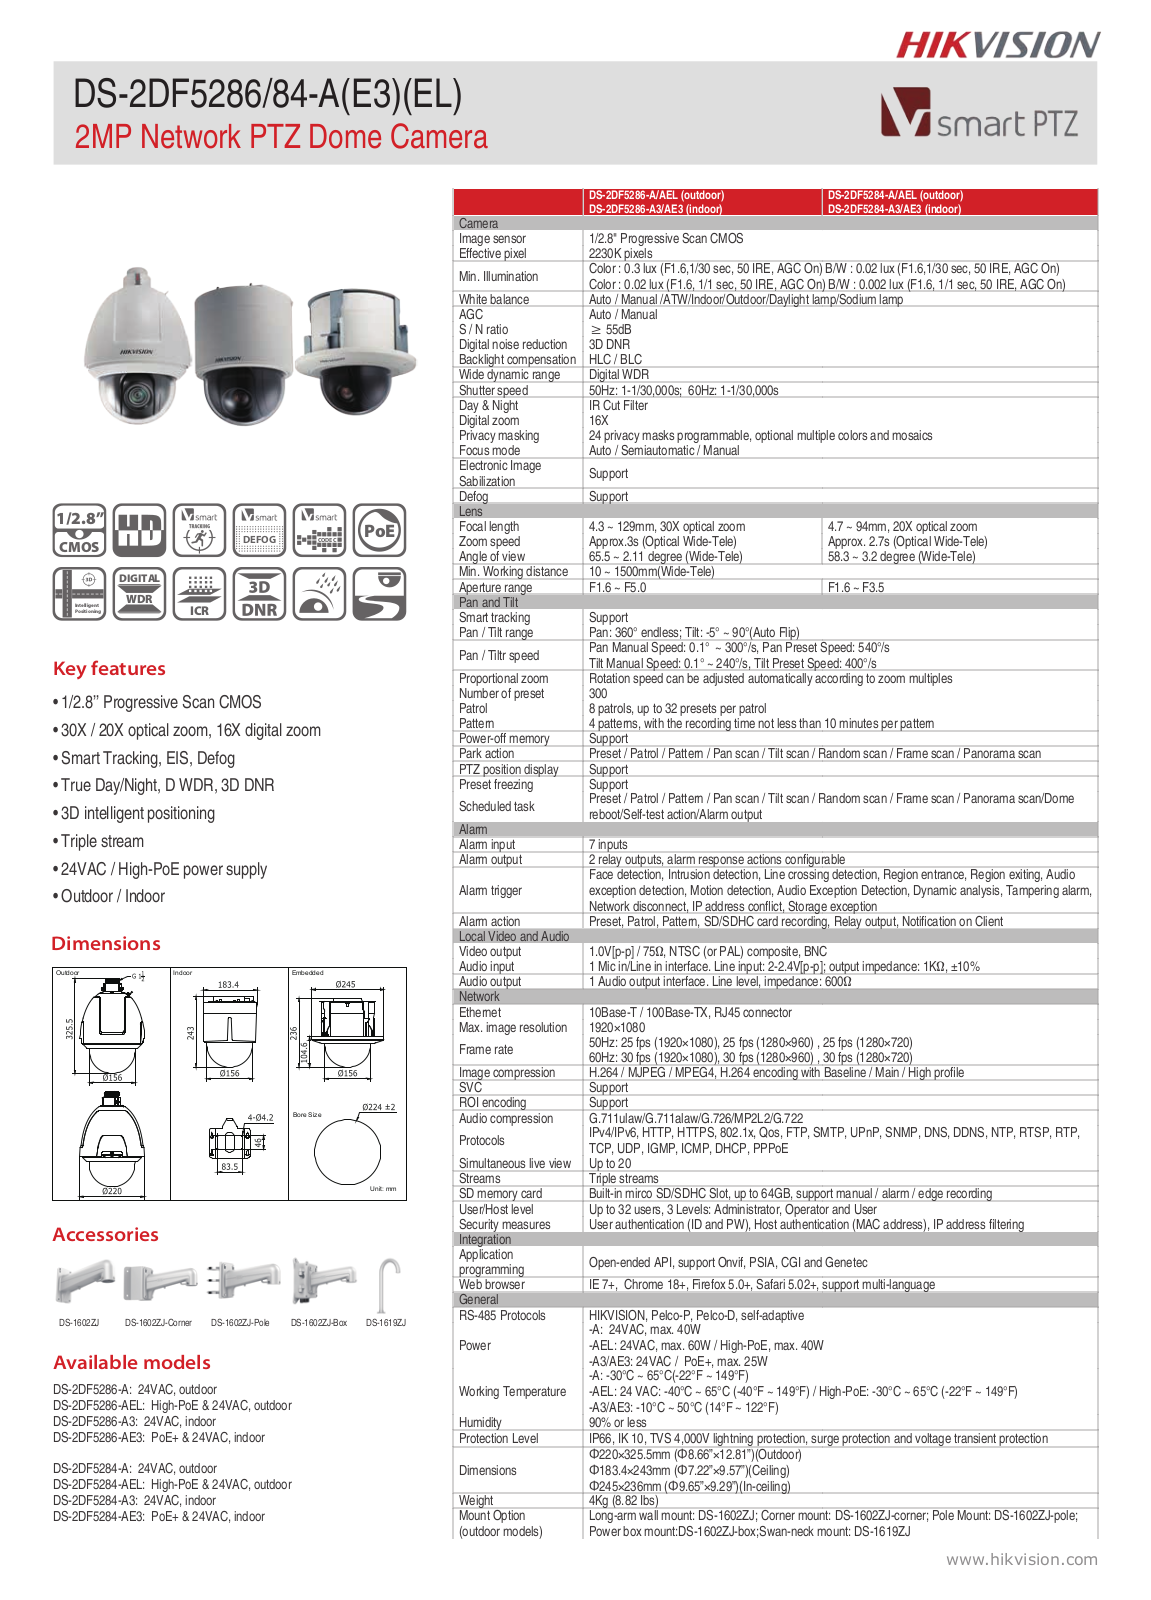 Hikvision DS-2DF5286-AE3, DS-2DF5286-AEL Specsheet